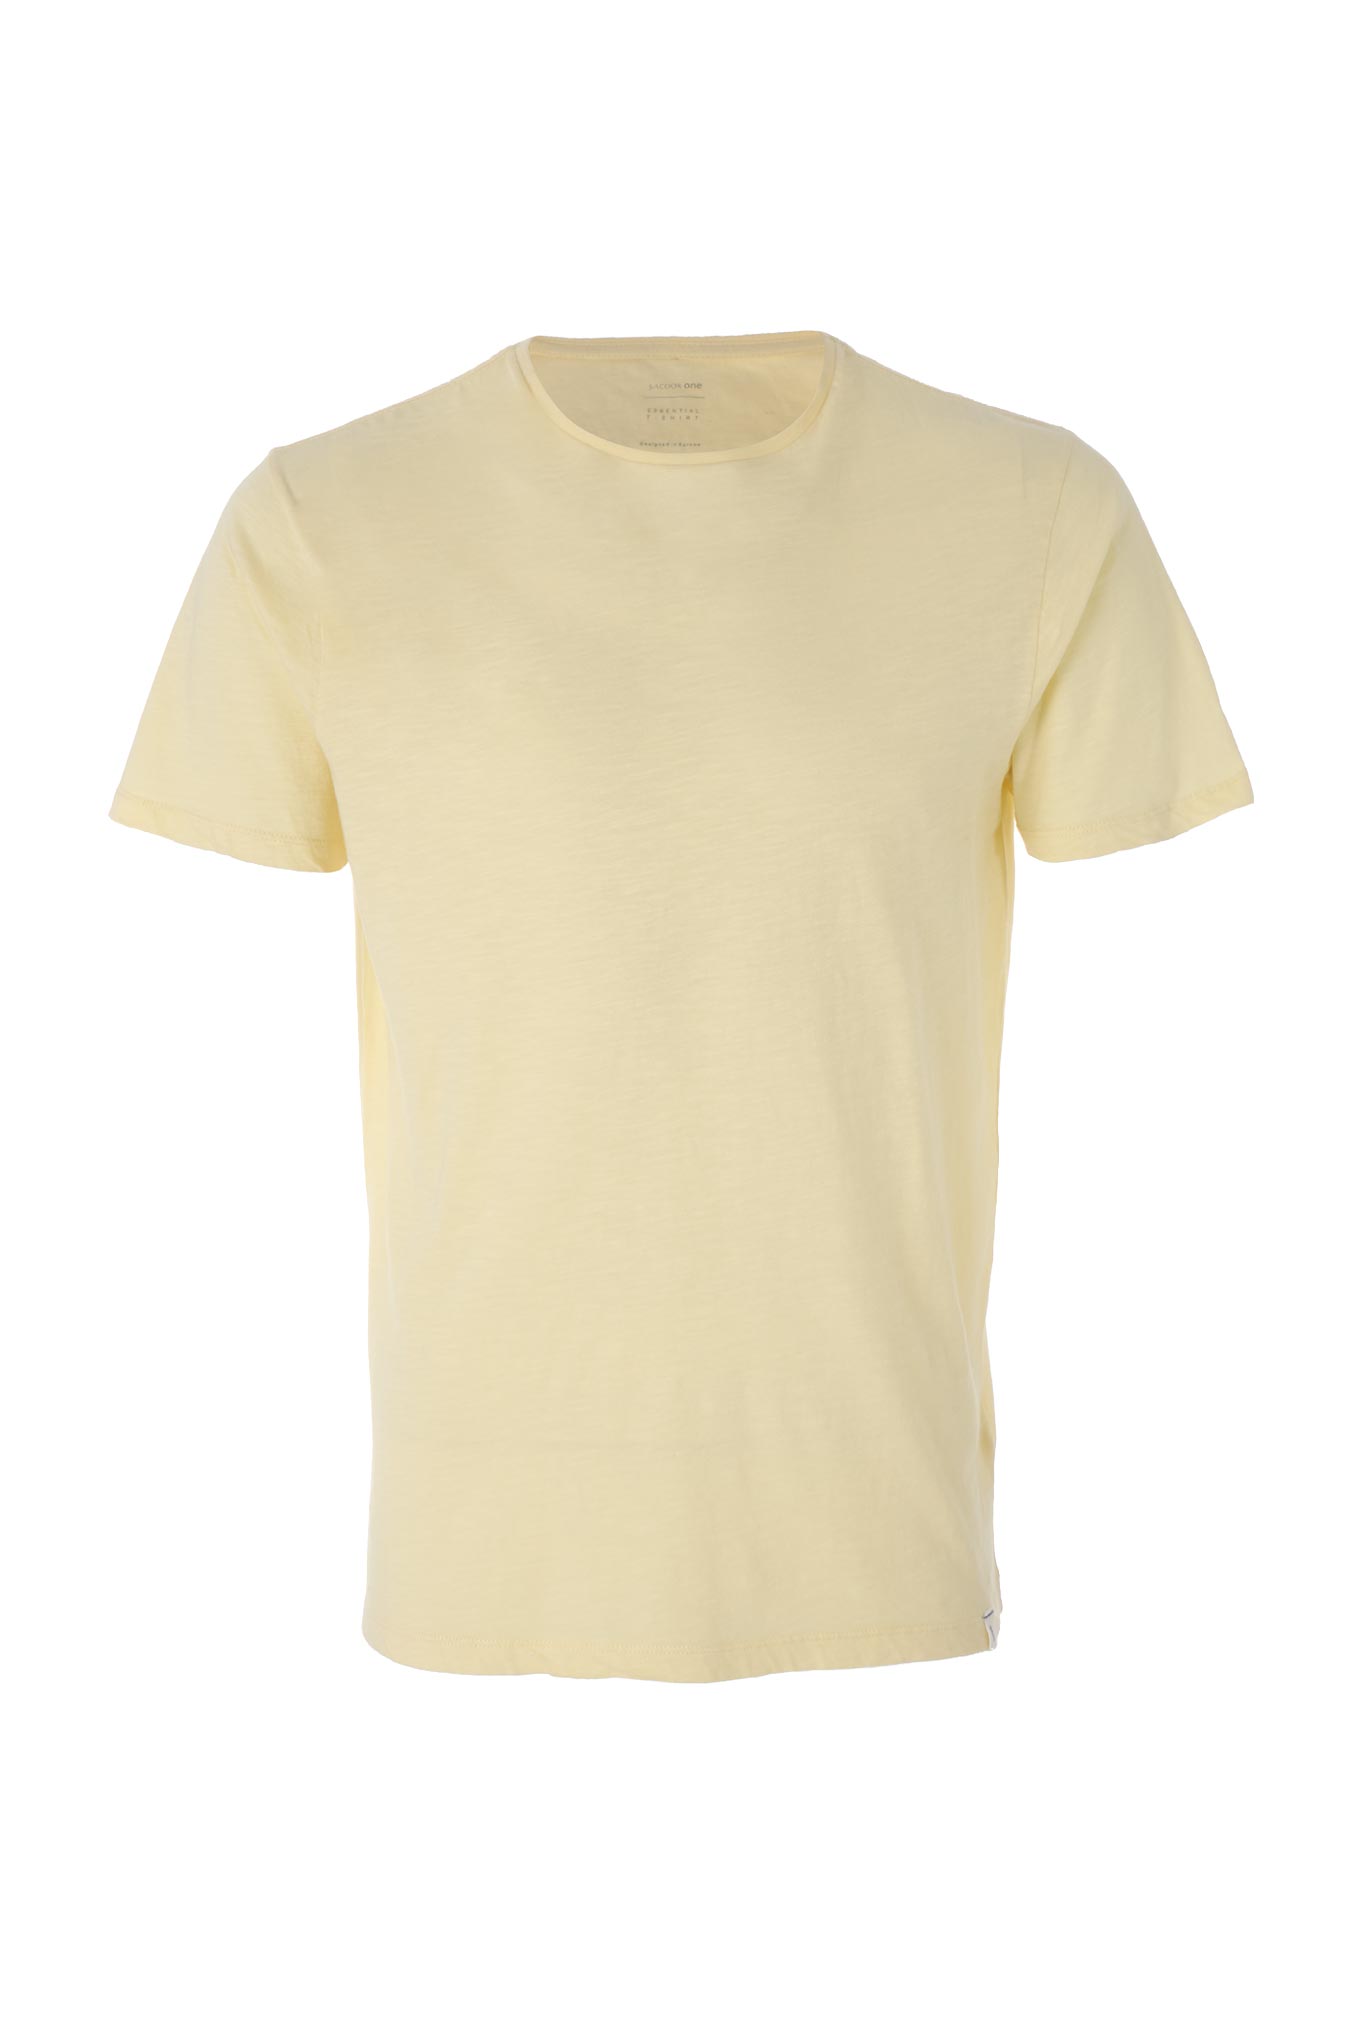 T-Shirt Amarelo Claro Sport Homem